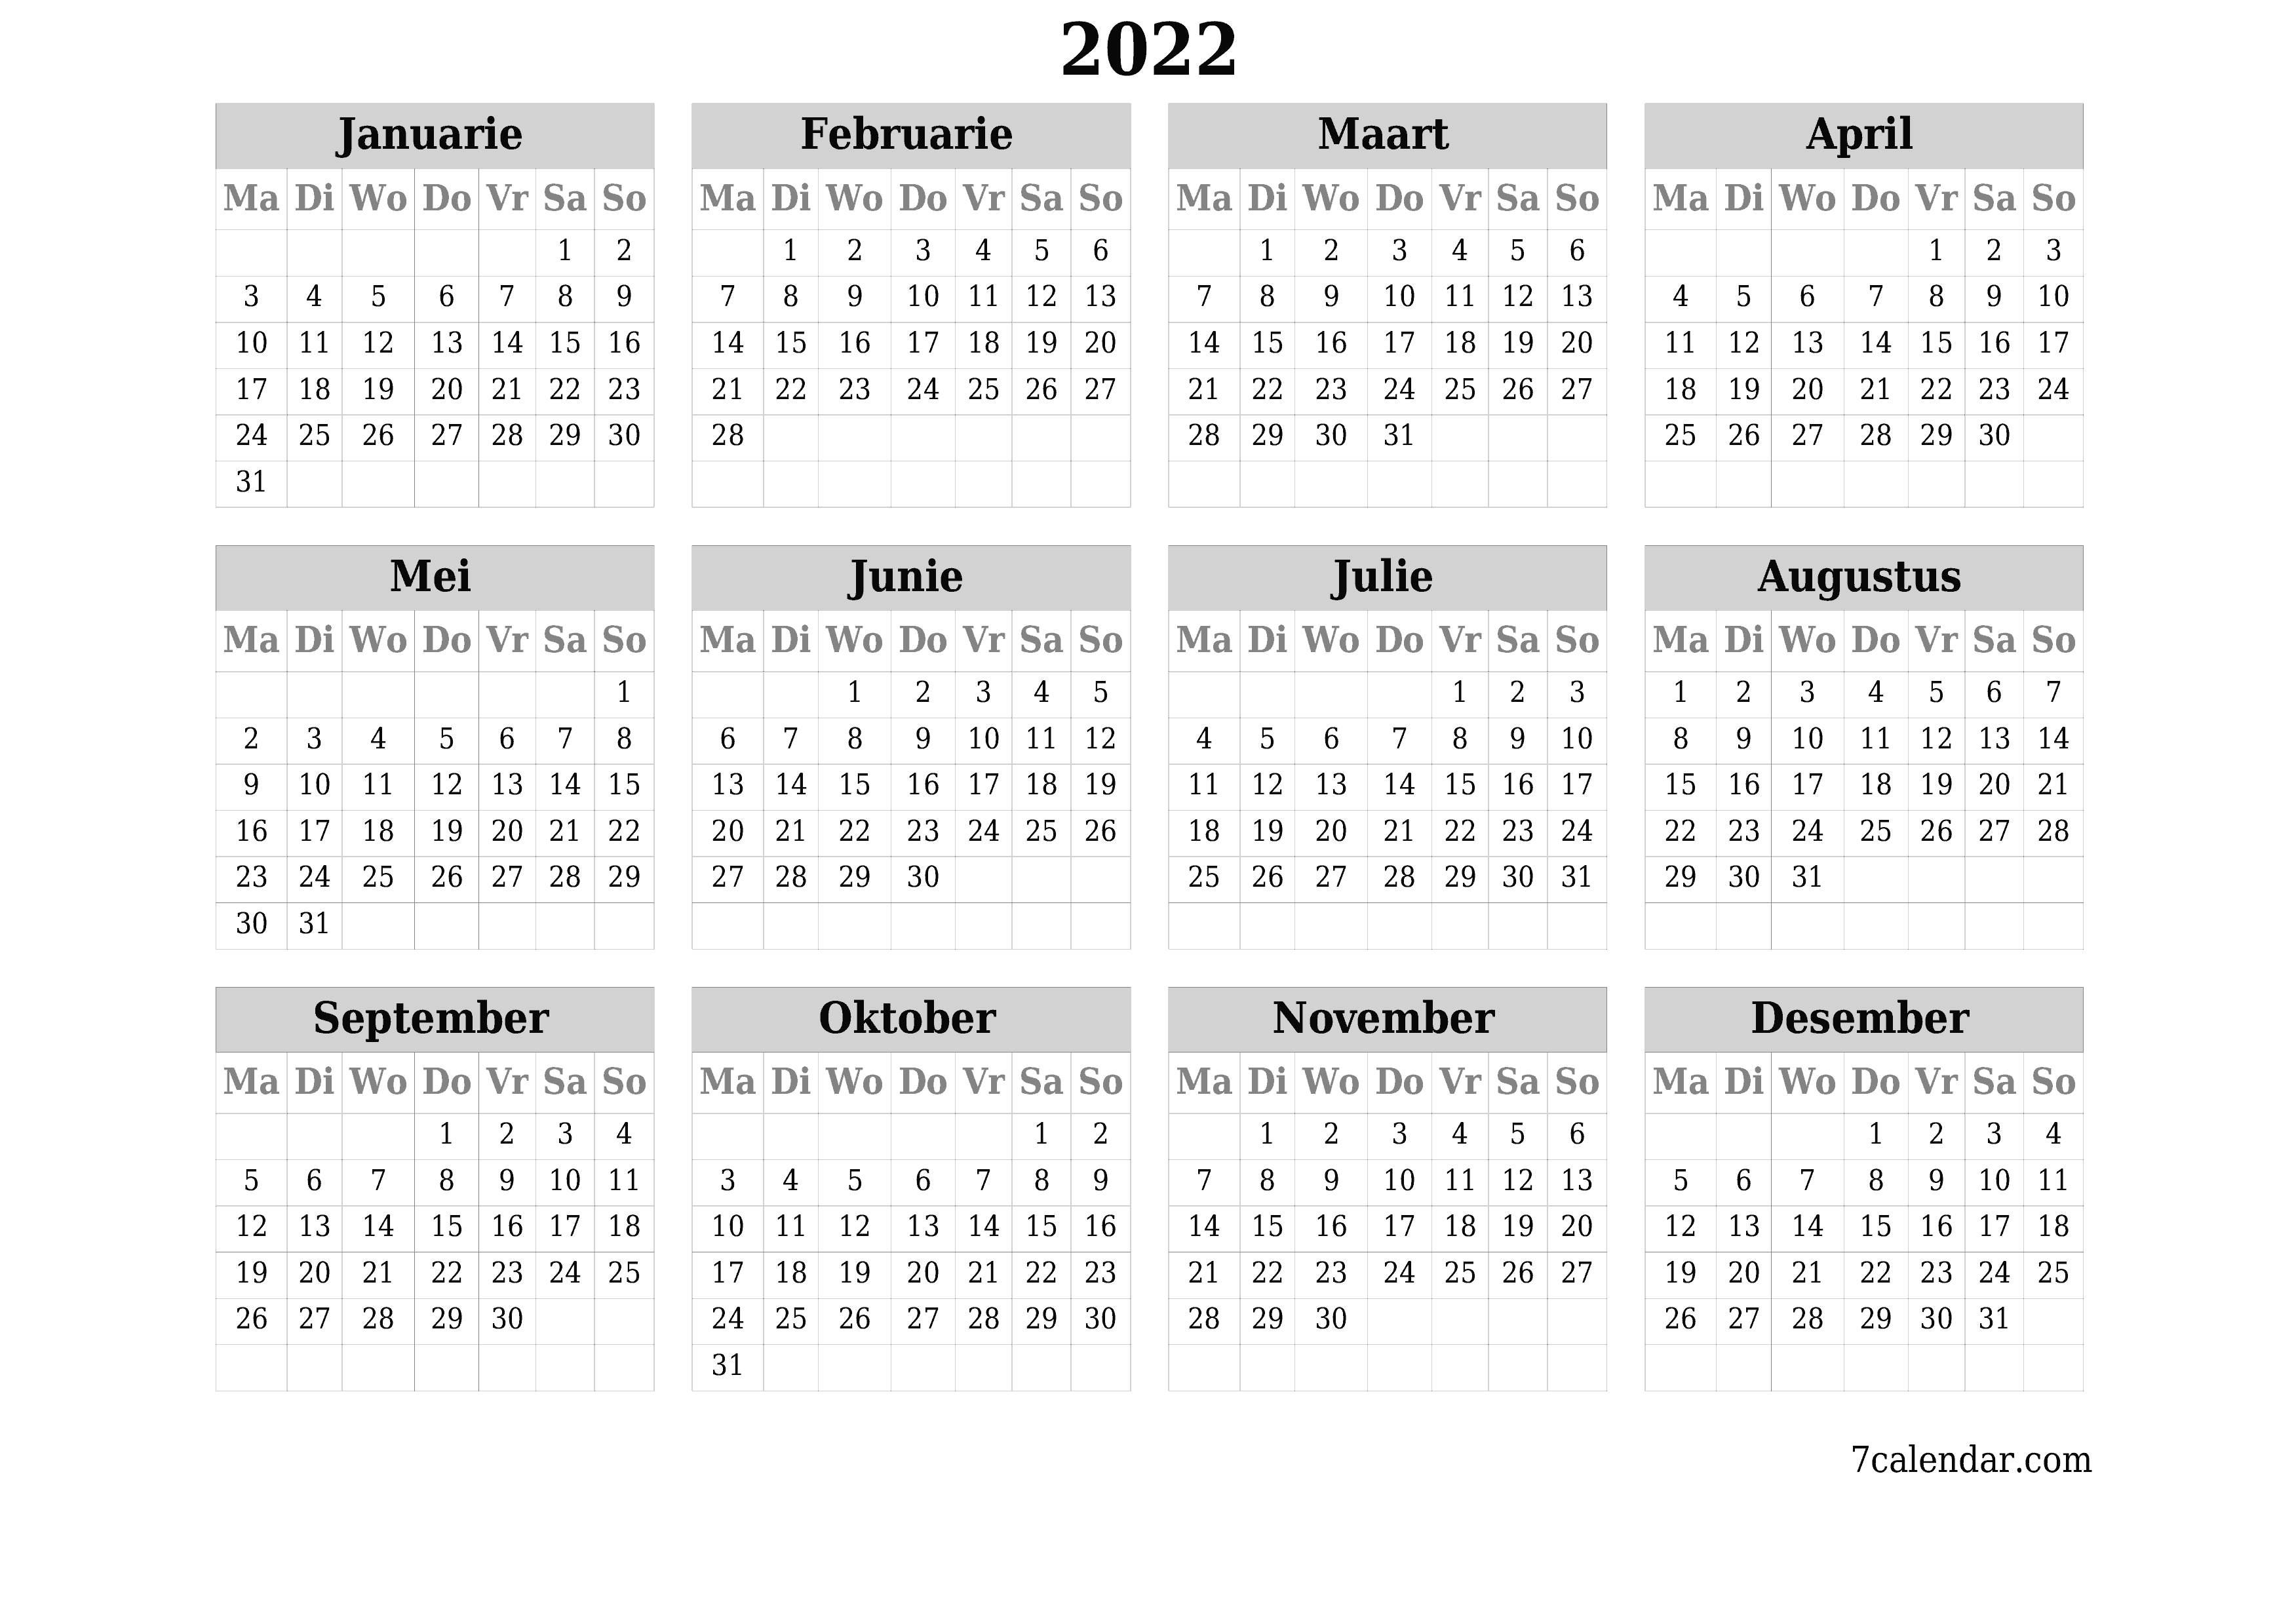 Leë jaarlikse drukbare kalender en beplanner vir die jaar 2022 met notas, stoor en druk na PDF PNG Afrikaans - 7calendar.com